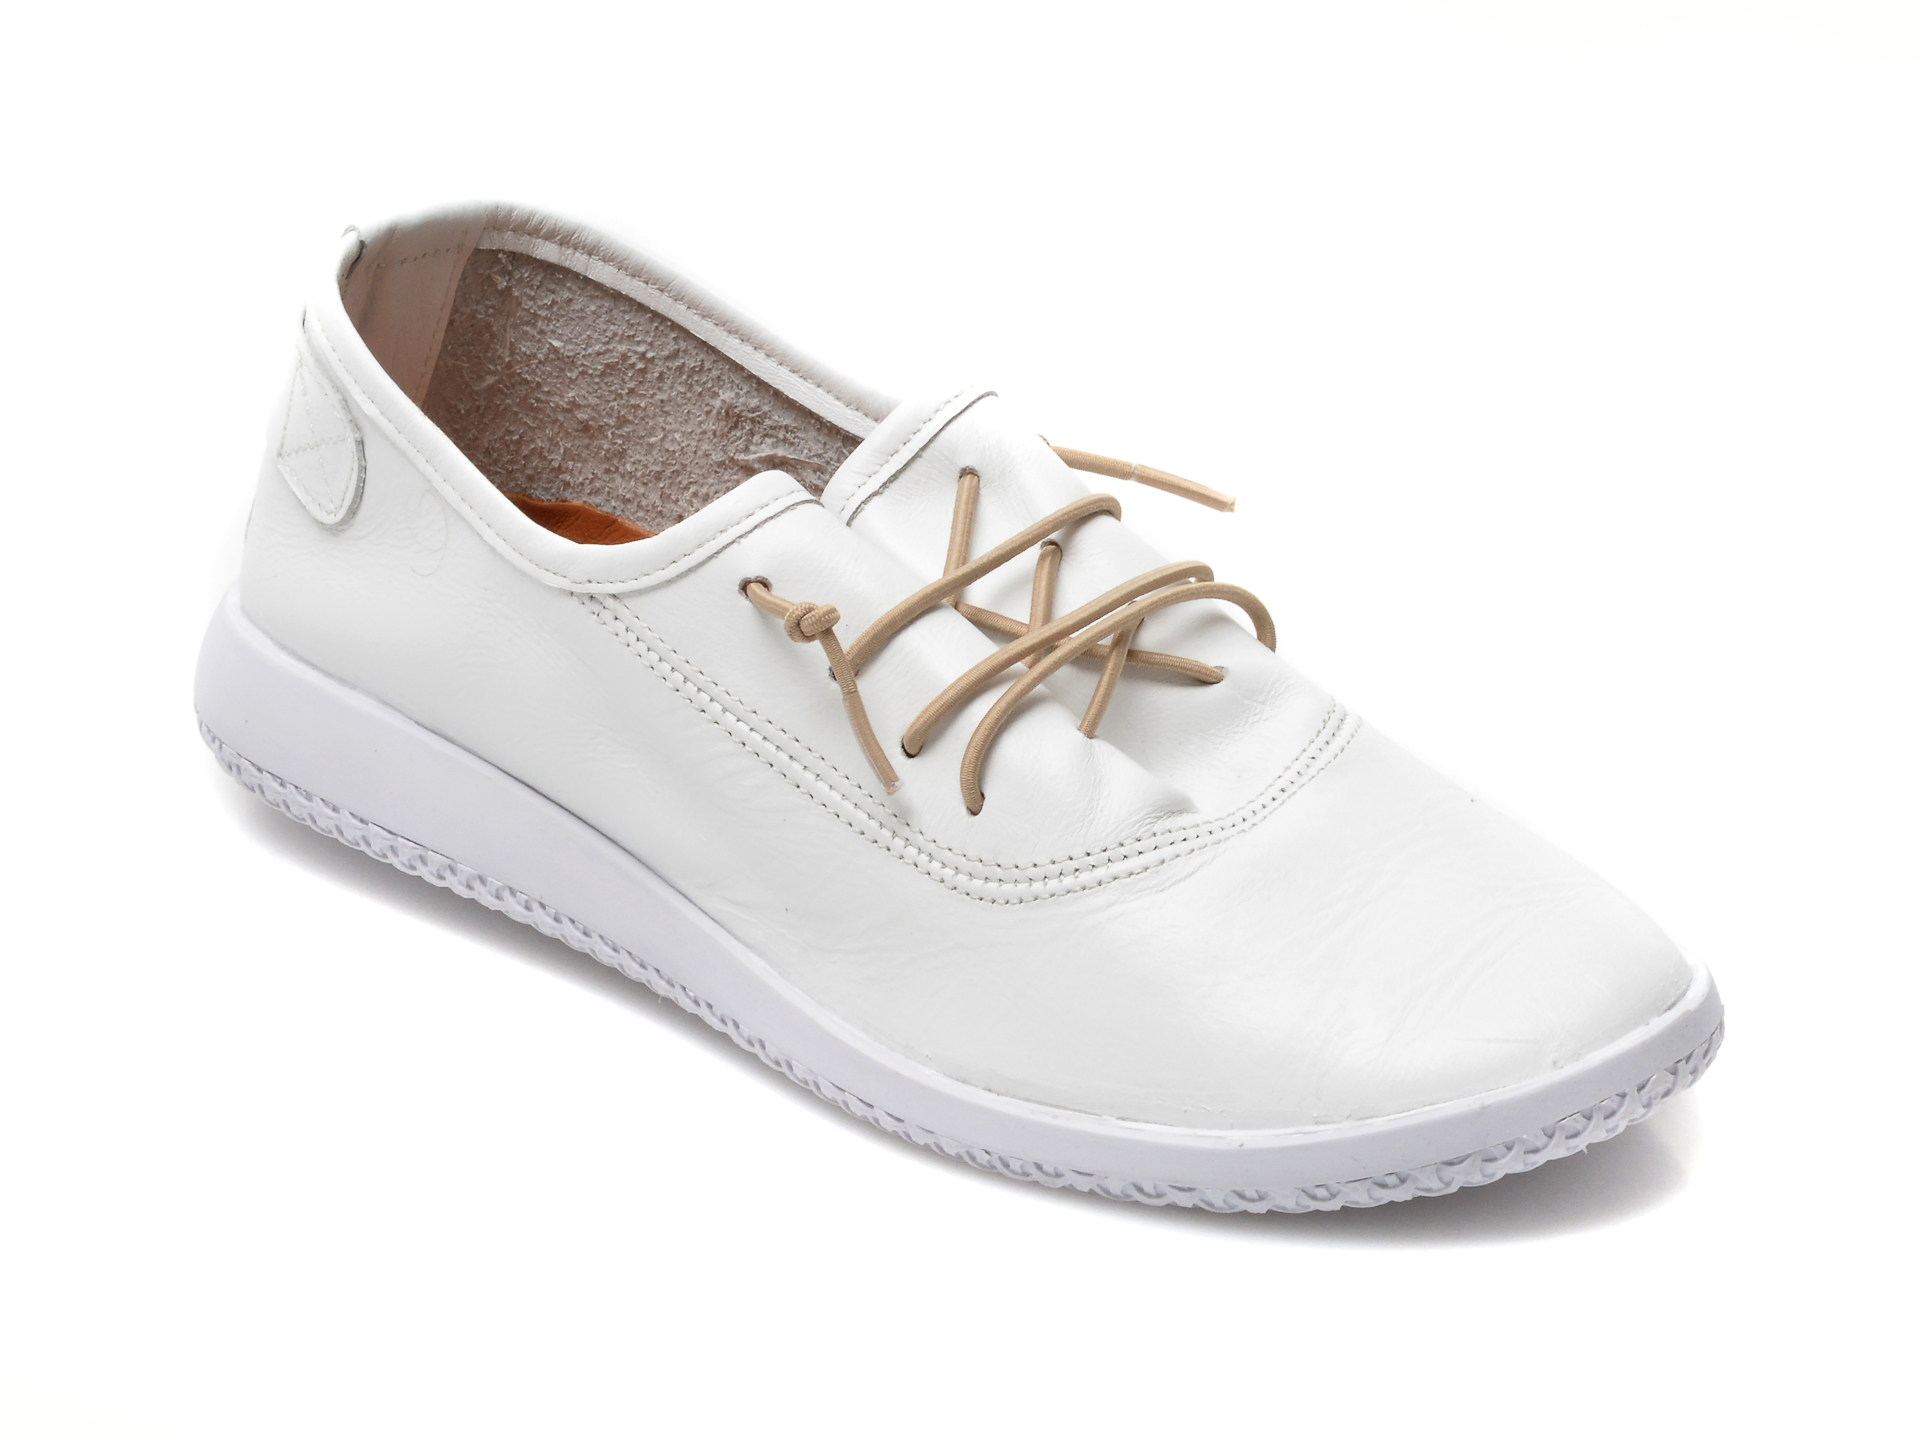 Pantofi FLAVIA PASSINI albi, 8562020, din piele naturala Flavia Passini